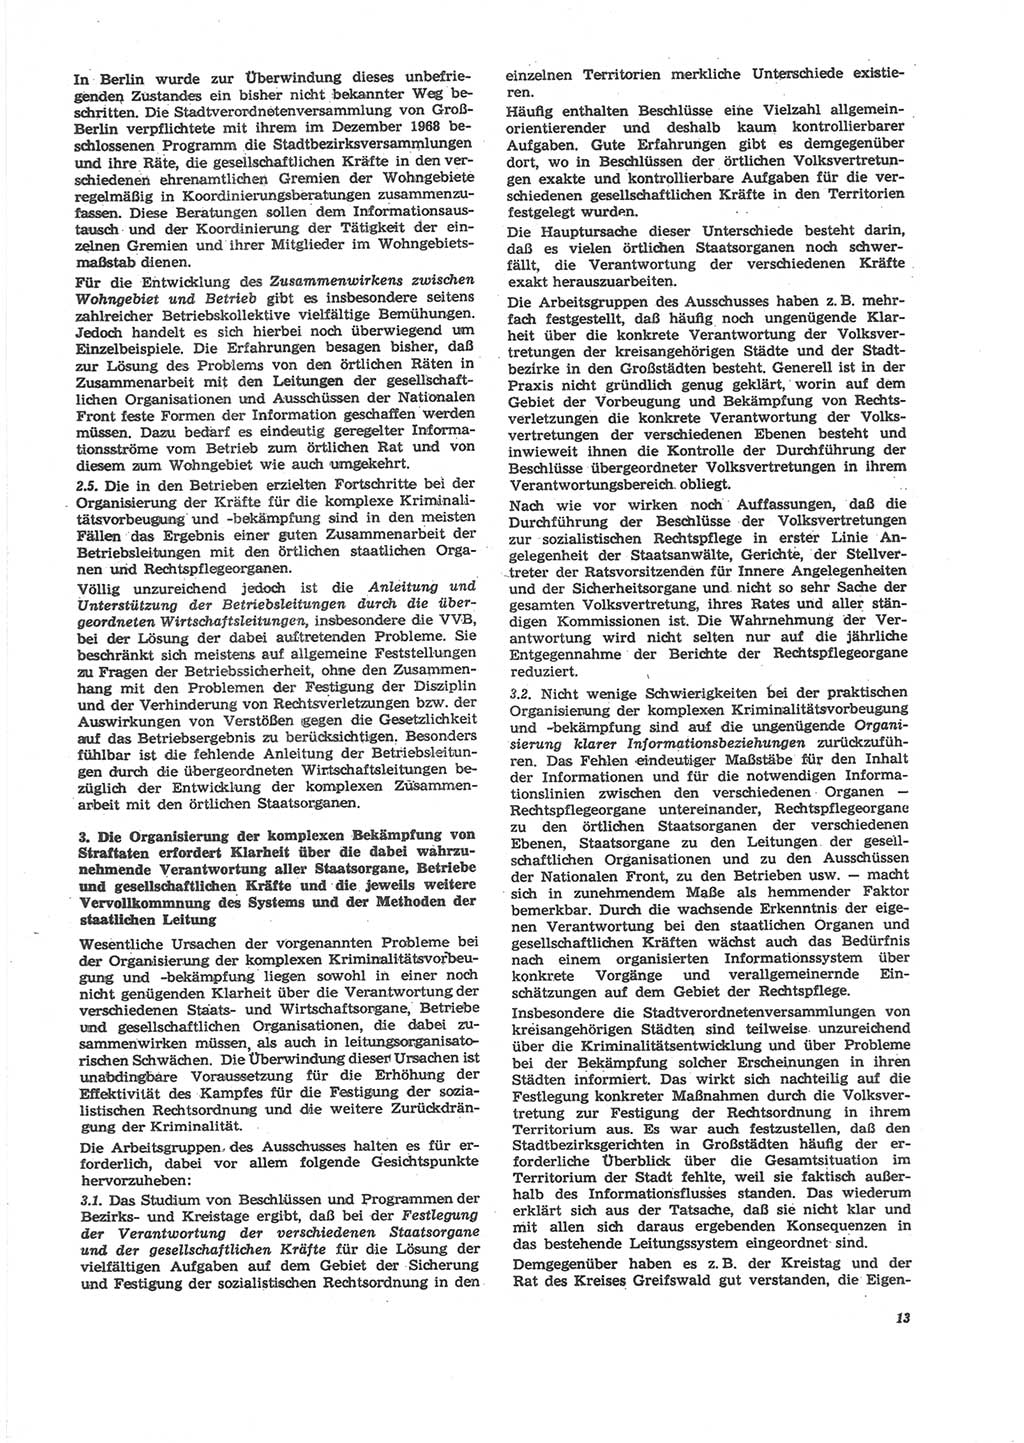 Neue Justiz (NJ), Zeitschrift für Recht und Rechtswissenschaft [Deutsche Demokratische Republik (DDR)], 24. Jahrgang 1970, Seite 13 (NJ DDR 1970, S. 13)